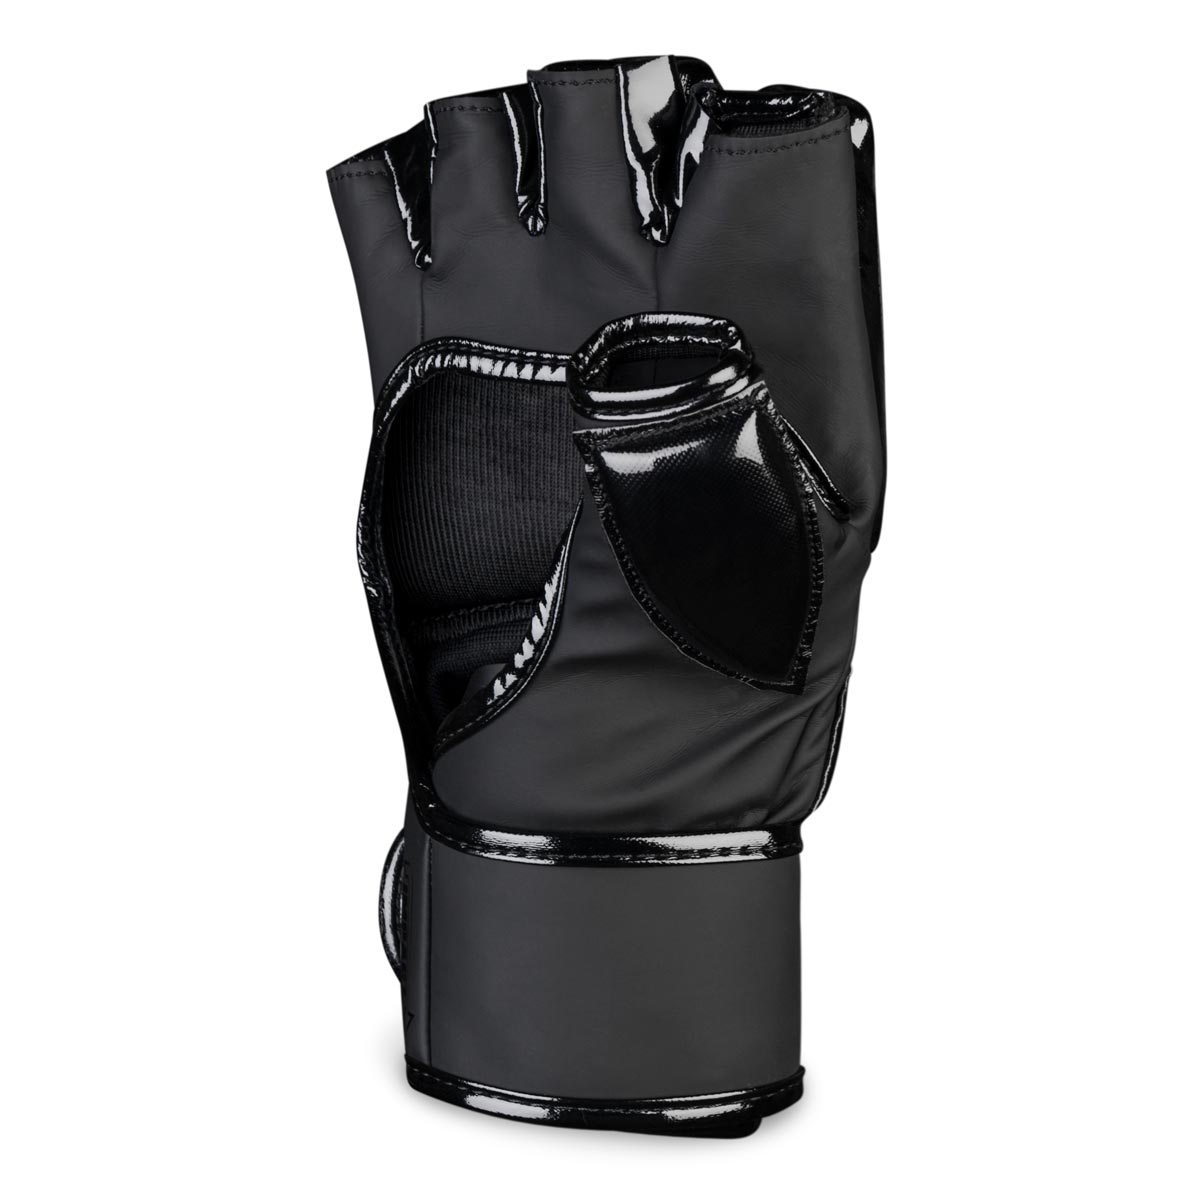 Die Phantom Apex Hybrid MMA Handschuhe - Rechter Handschuh mit extra Daumenschutz